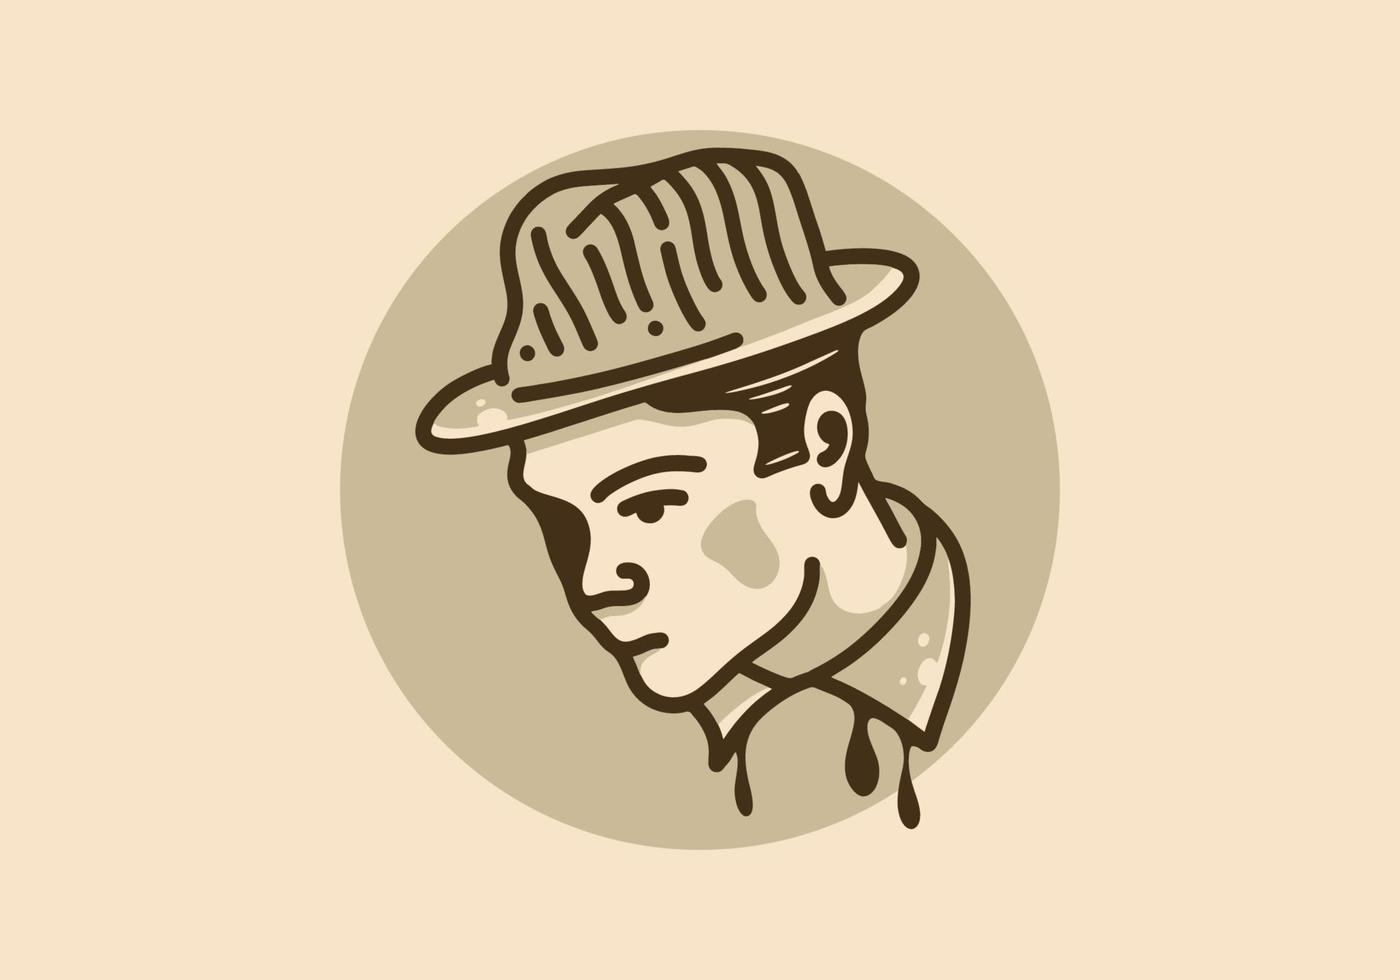 conception d'illustration d'hommes portant des chapeaux ronds vecteur